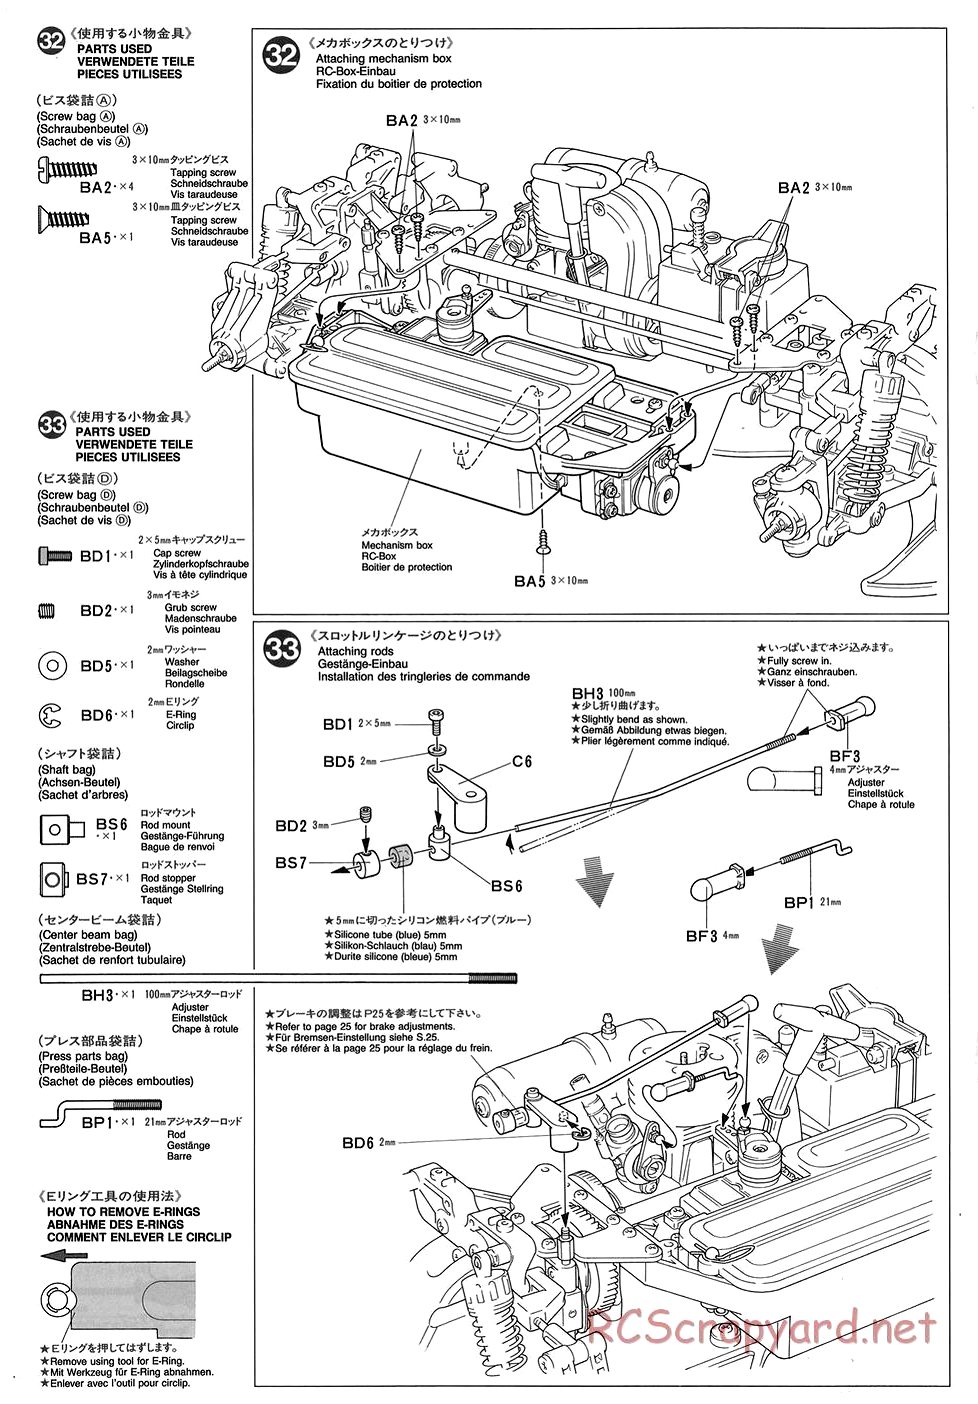 Tamiya - TGX Mk.1 Chassis - Manual - Page 16